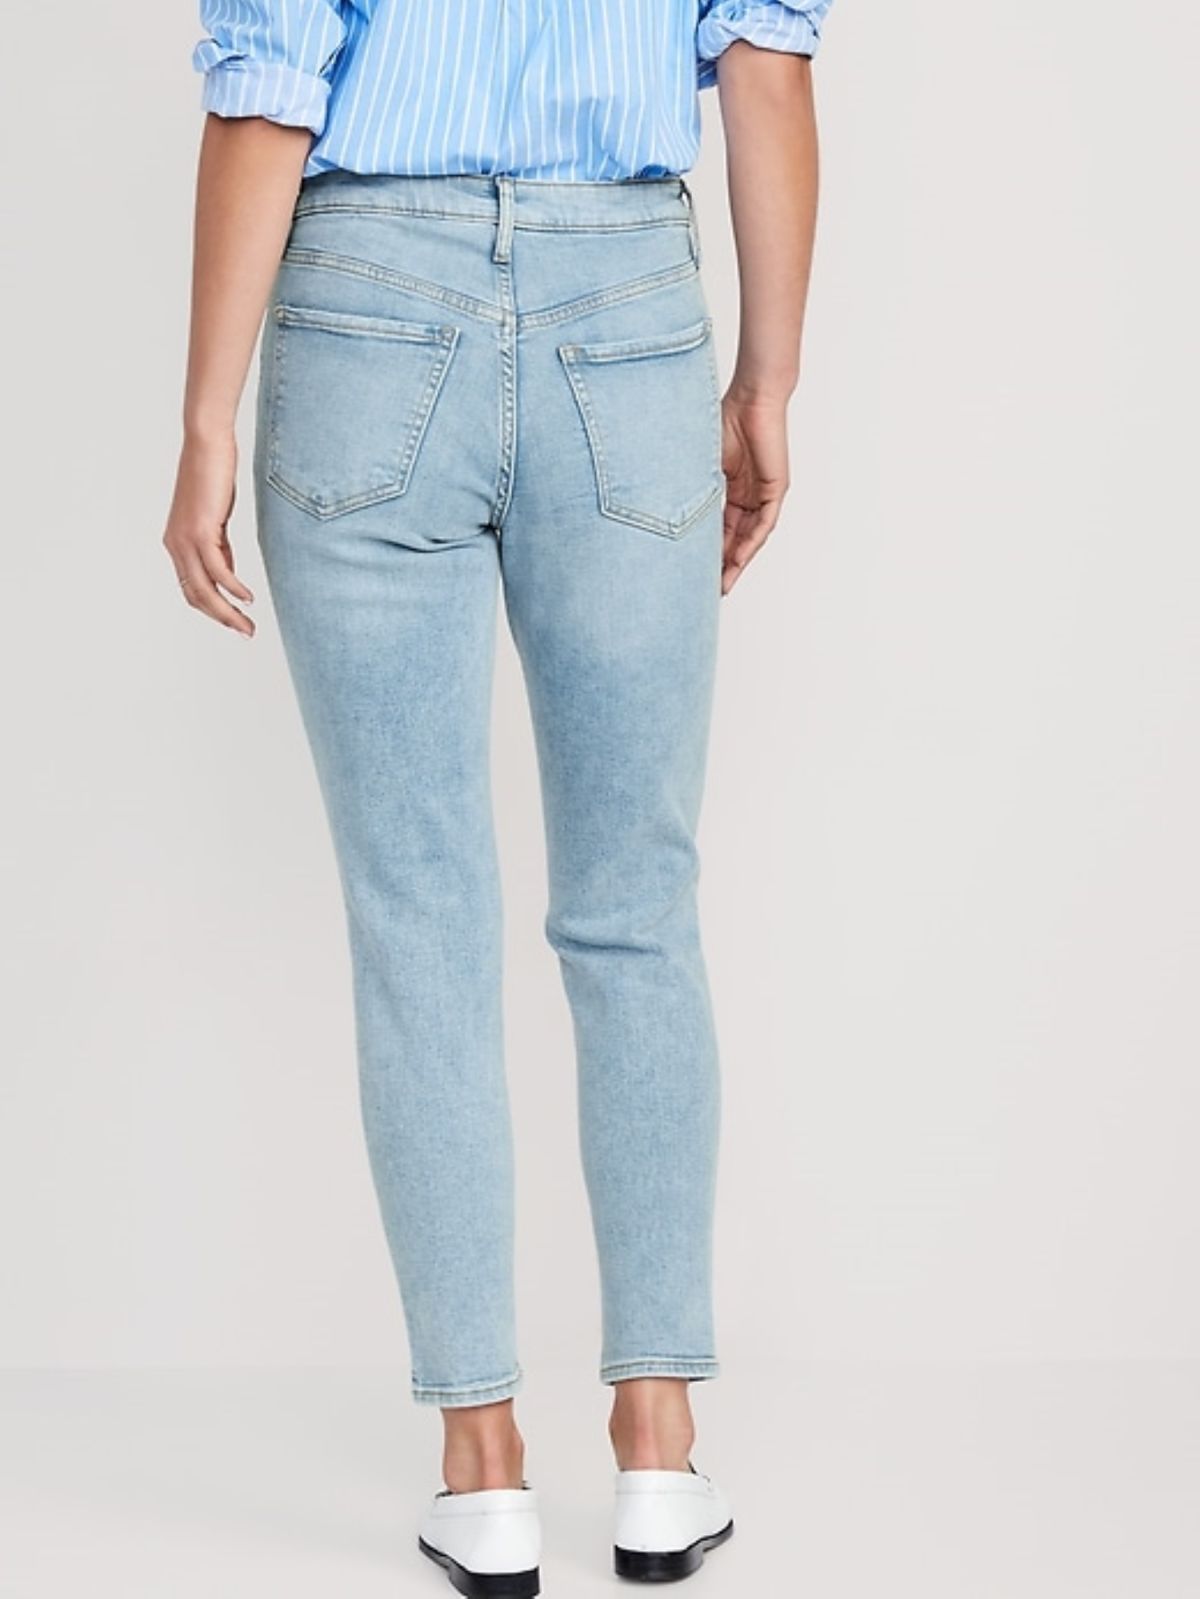  ג'ינס בגזרה ישרה עם קרעים של OLD NAVY